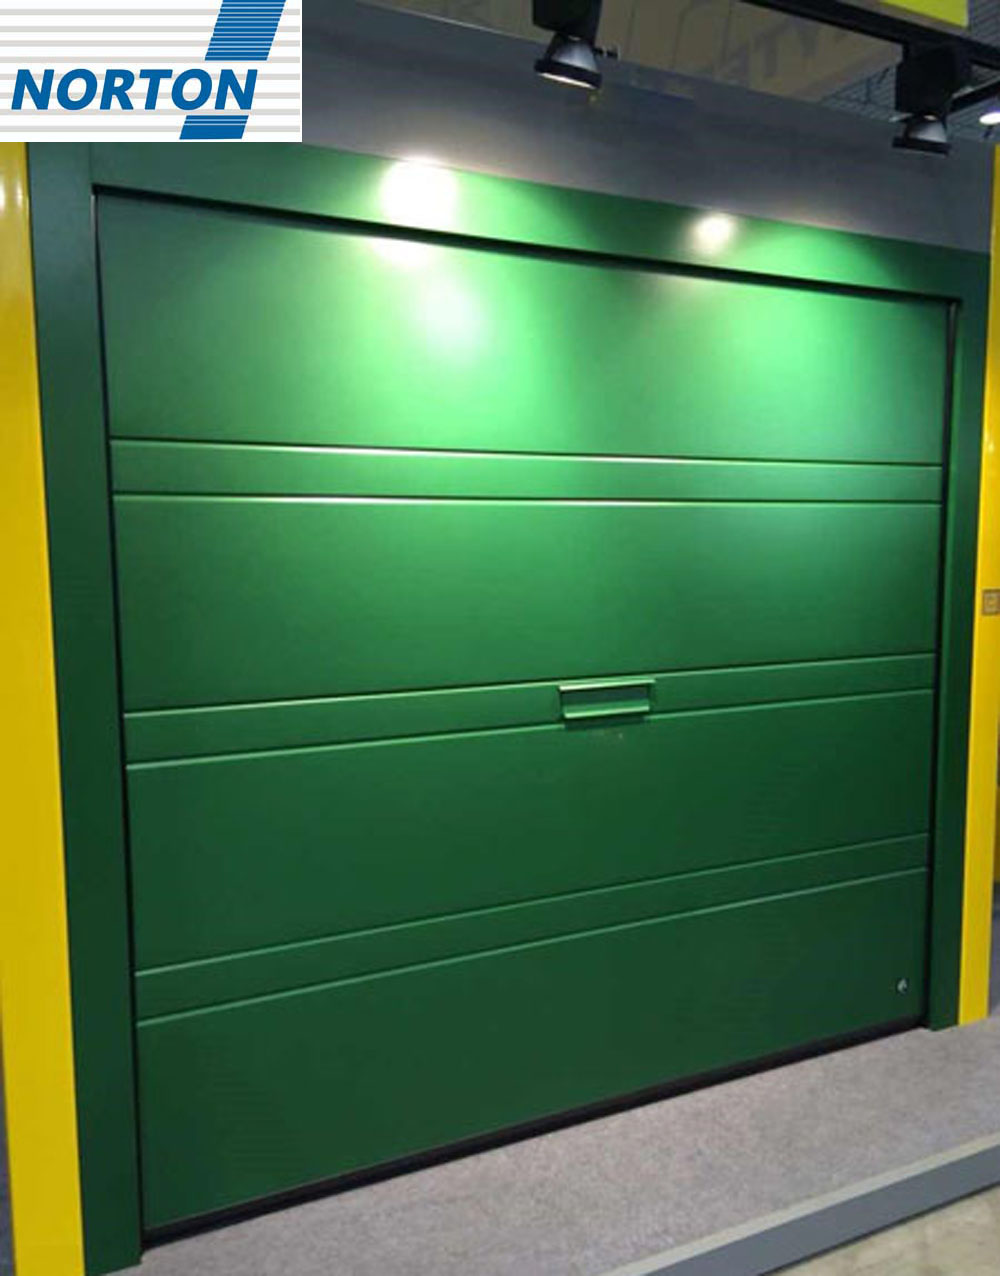 हरा पर्यावरण अनुकूल और फैशनेबल इलेक्ट्रिक गेराज दरवाजा